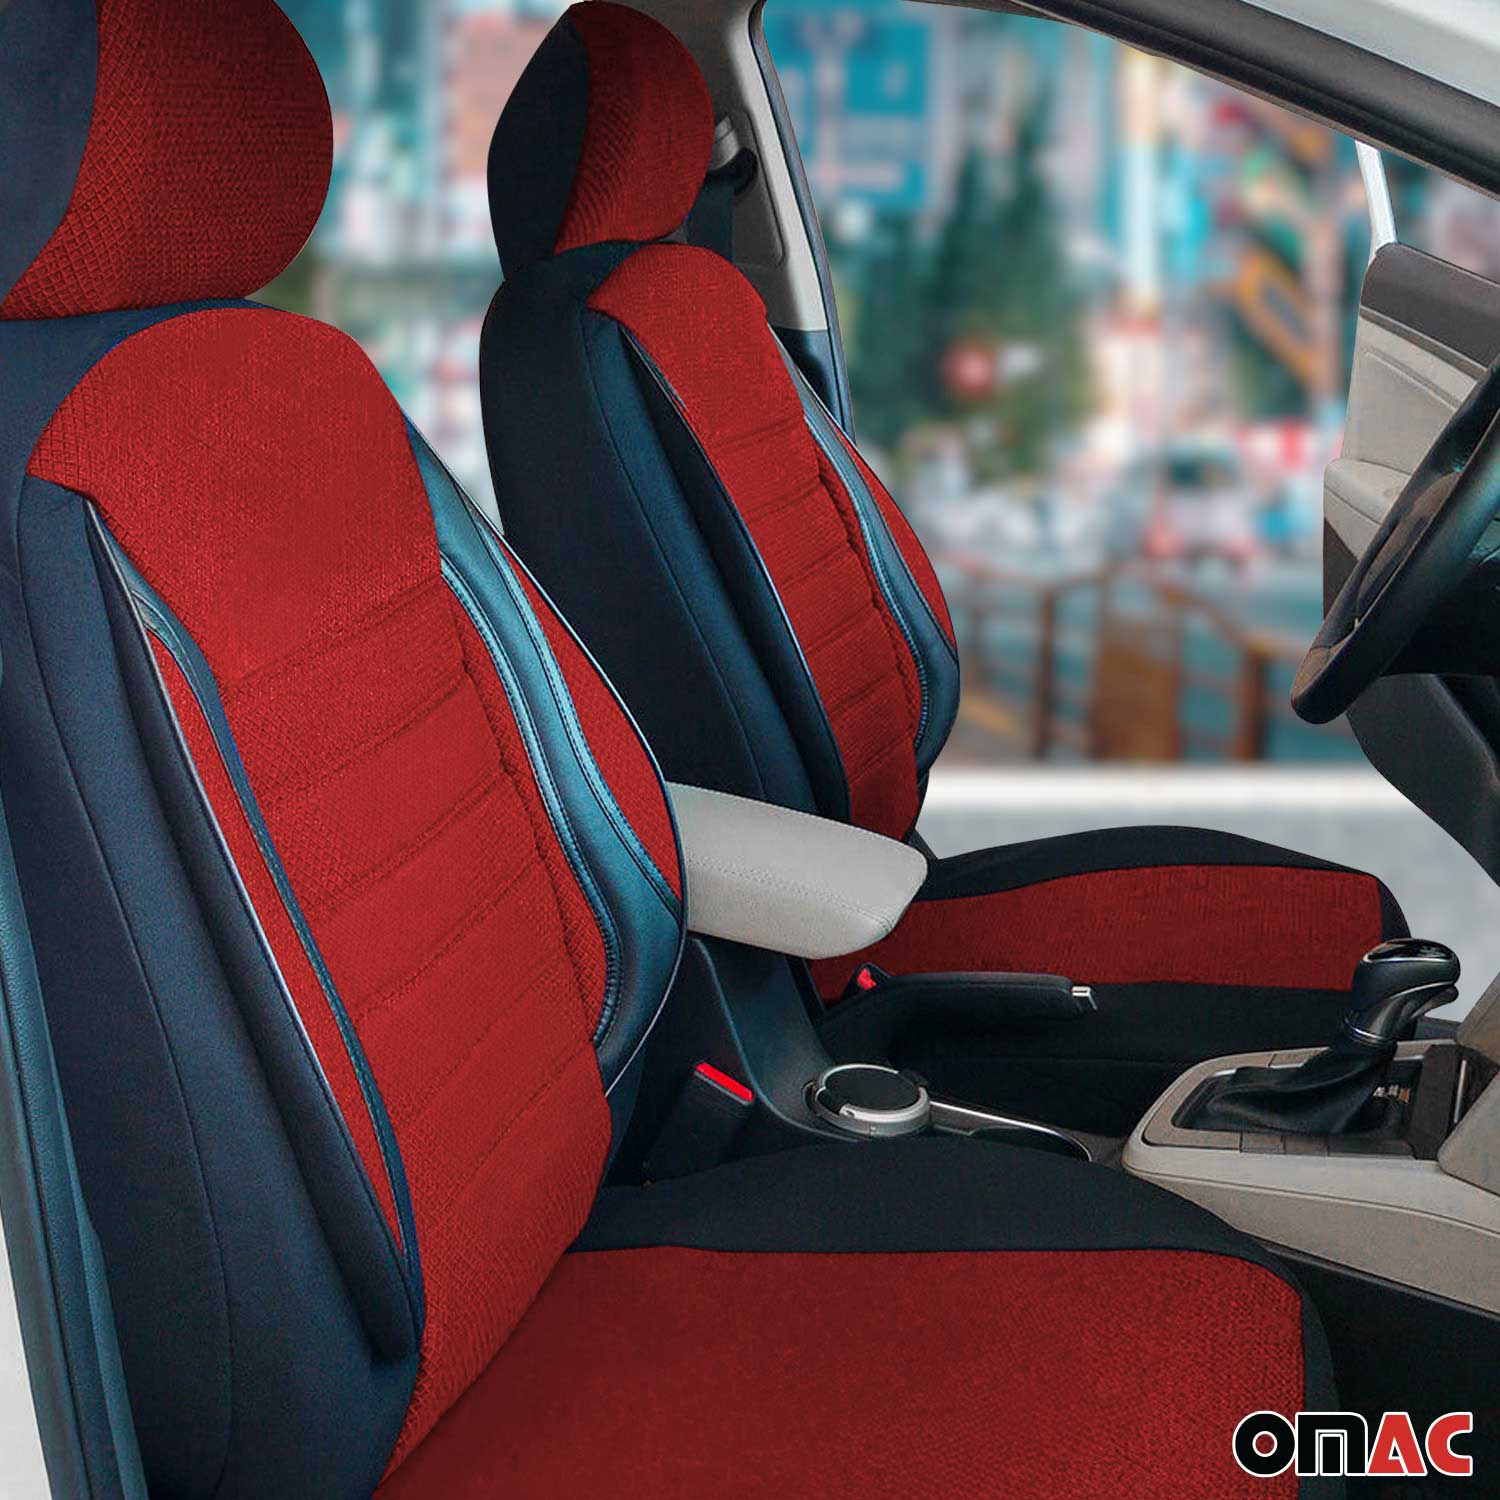 Für Mazda BT-50 Scrum Schonbezüge Sitzbezug Schwarz Rot Vorne Satz 1+1 Auto